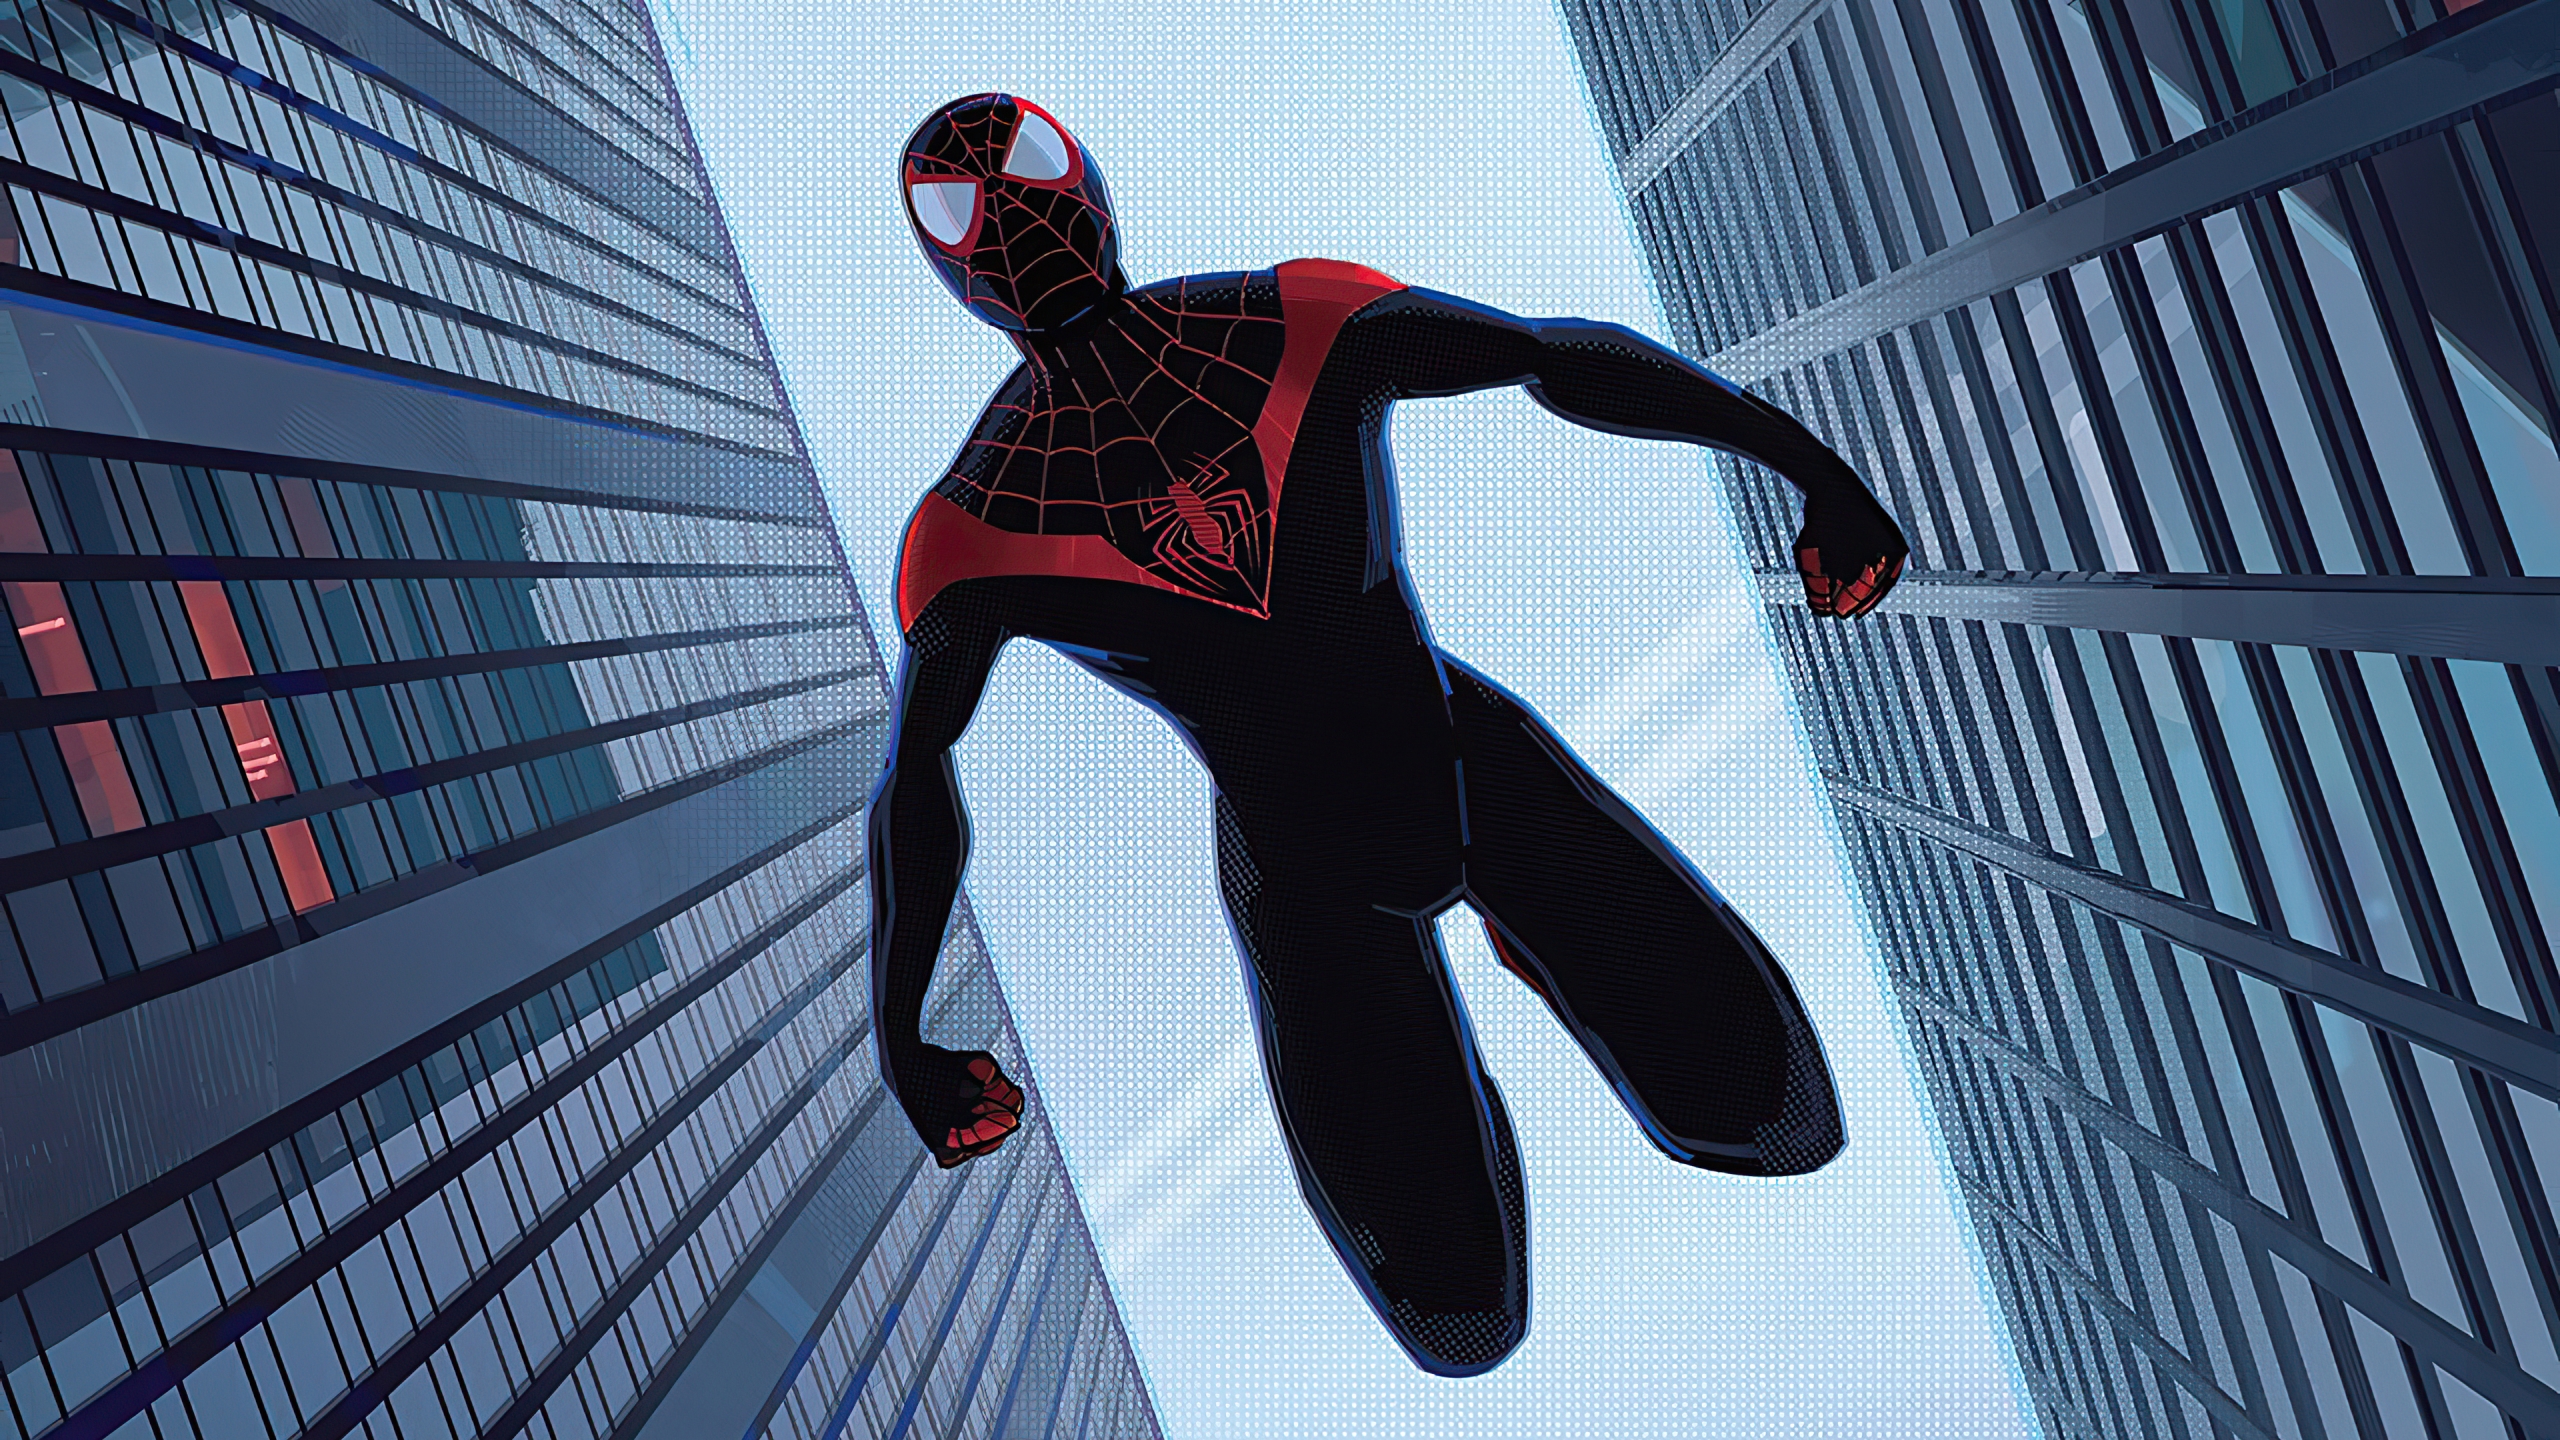 Spiderman Miles Morales falling between buildings Wallpaper 4k Ultra HD  ID:5994